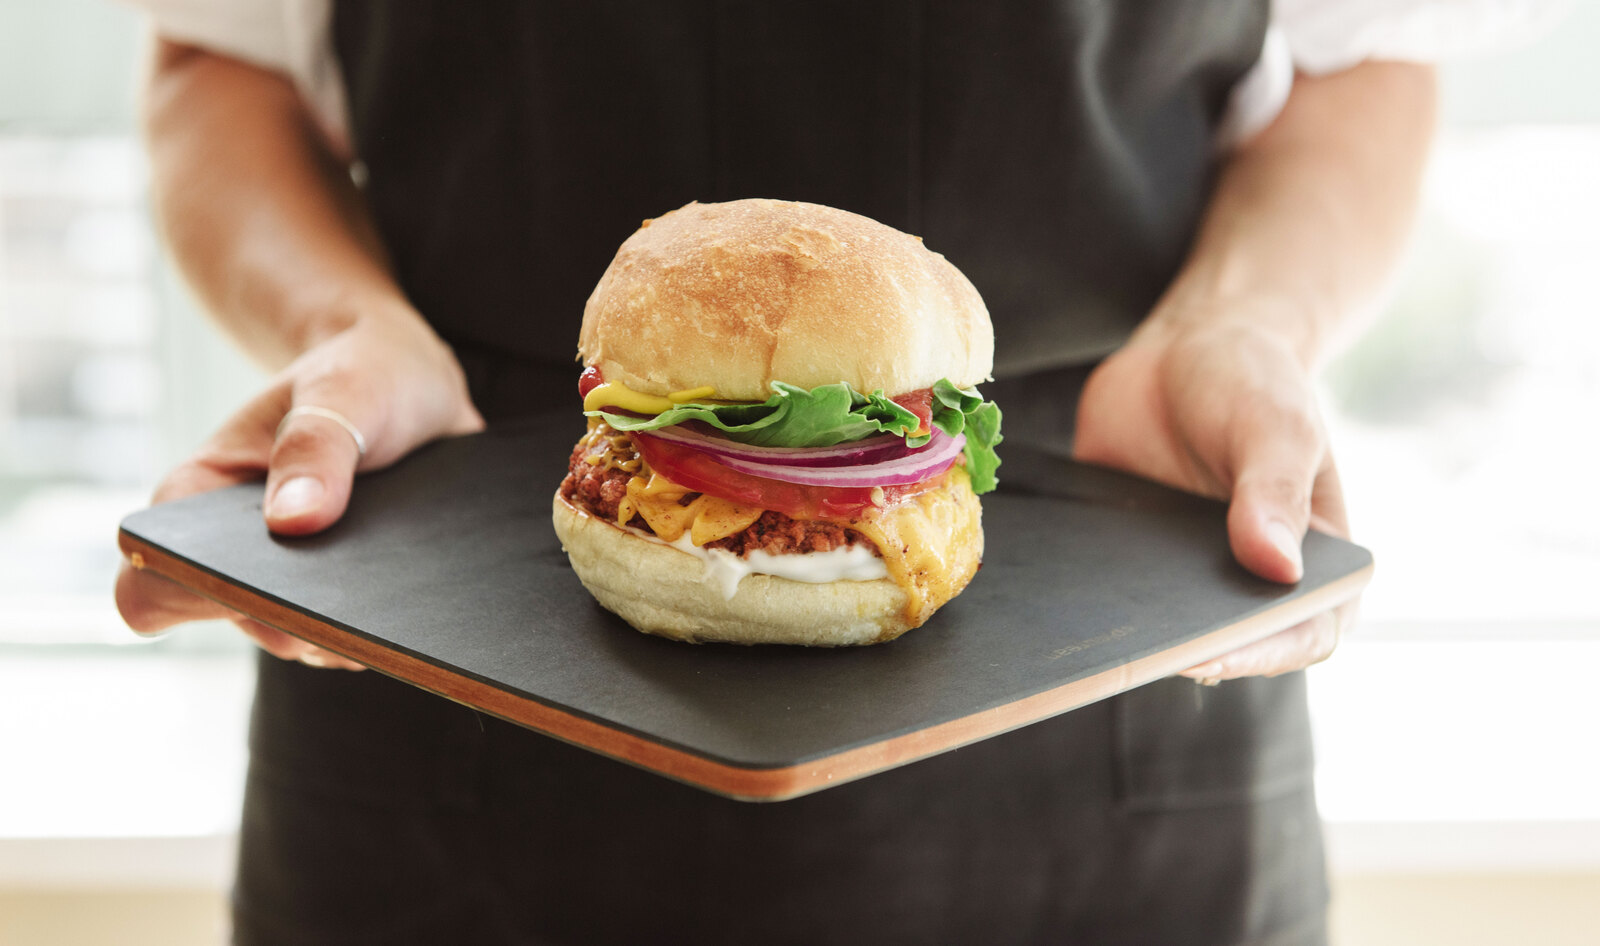 New Vegan “TMRW” Burger to Debut in Canada